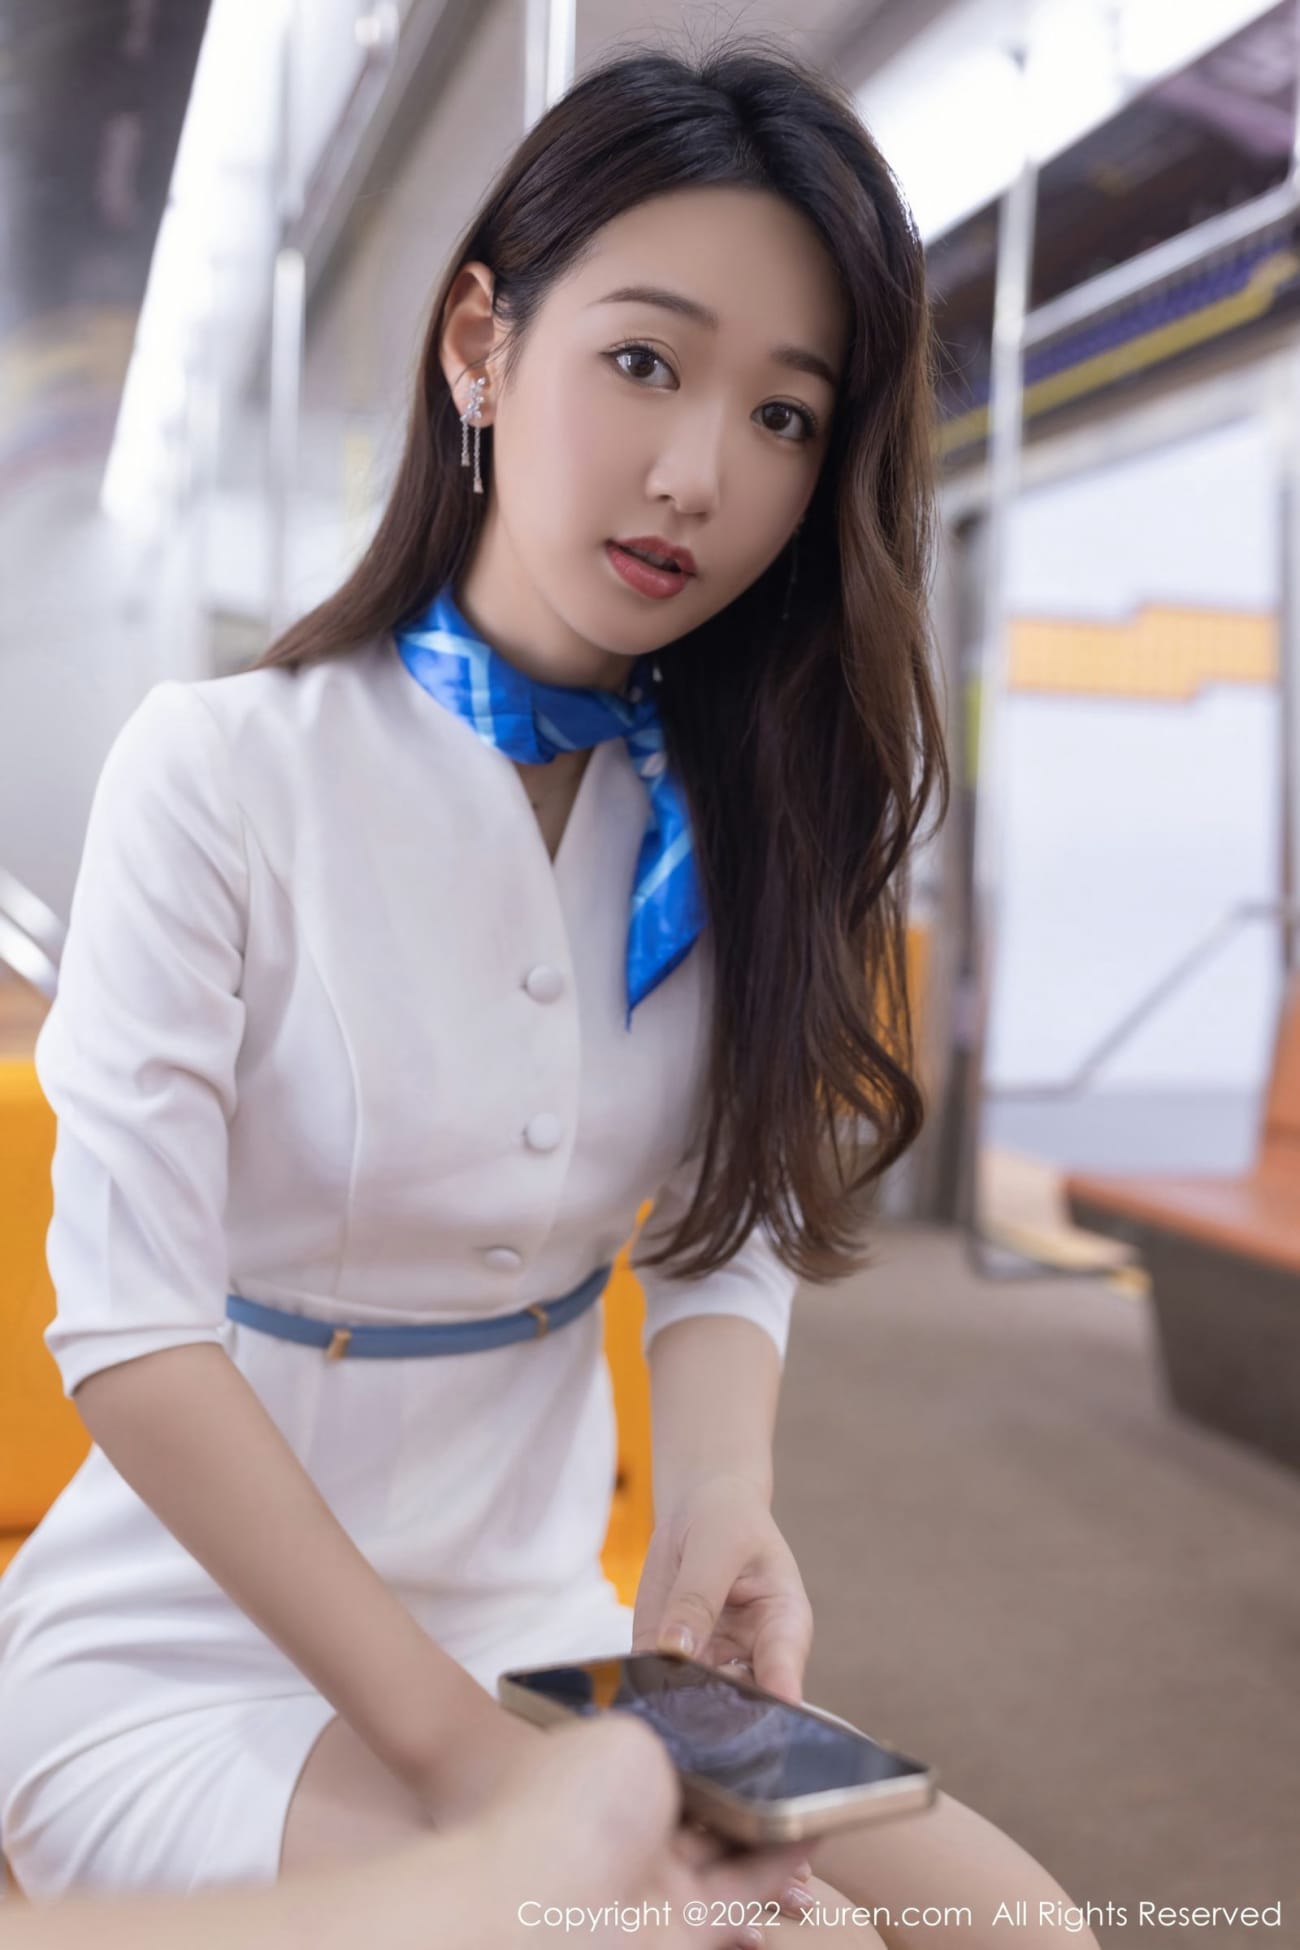 美女模特唐安琪白色制服丝袜系列地铁车厢场景写真